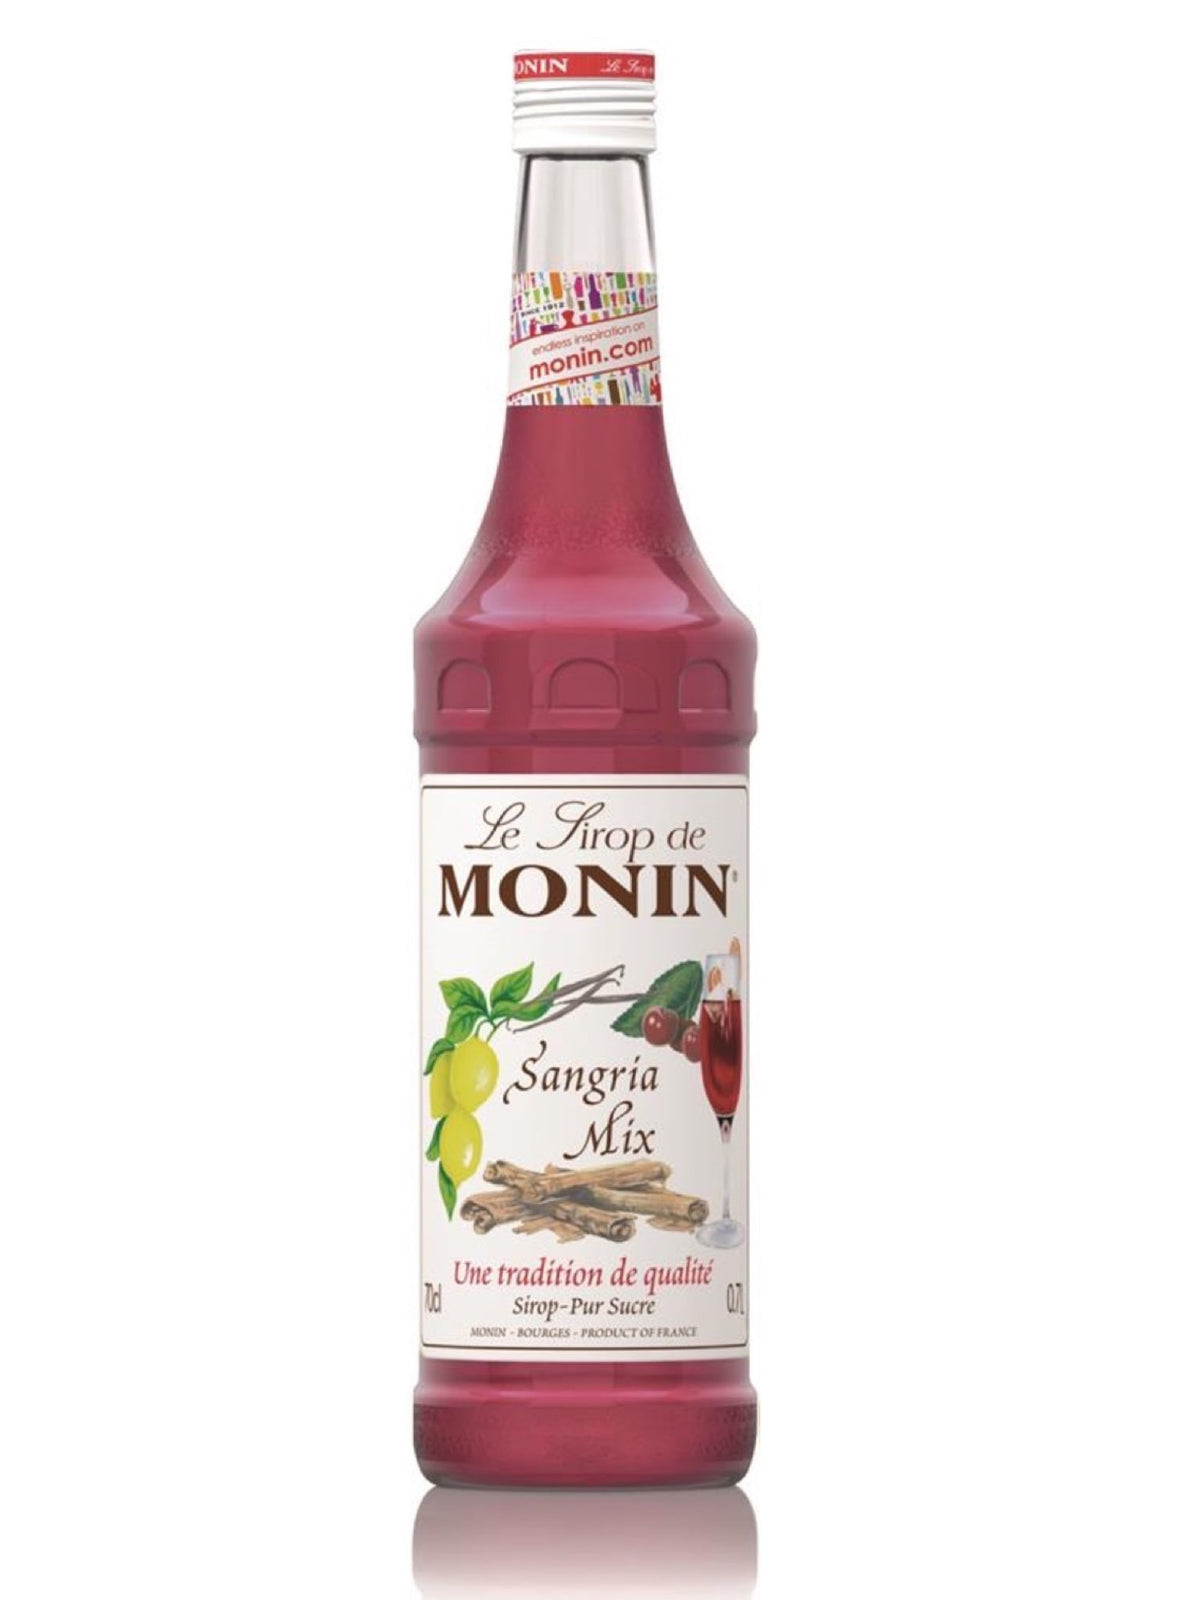 Monin Sangria Sirup - skab en autentisk og forfriskende sangriaoplevelse med denne velsmagende og aromatiske sirup fra Monin